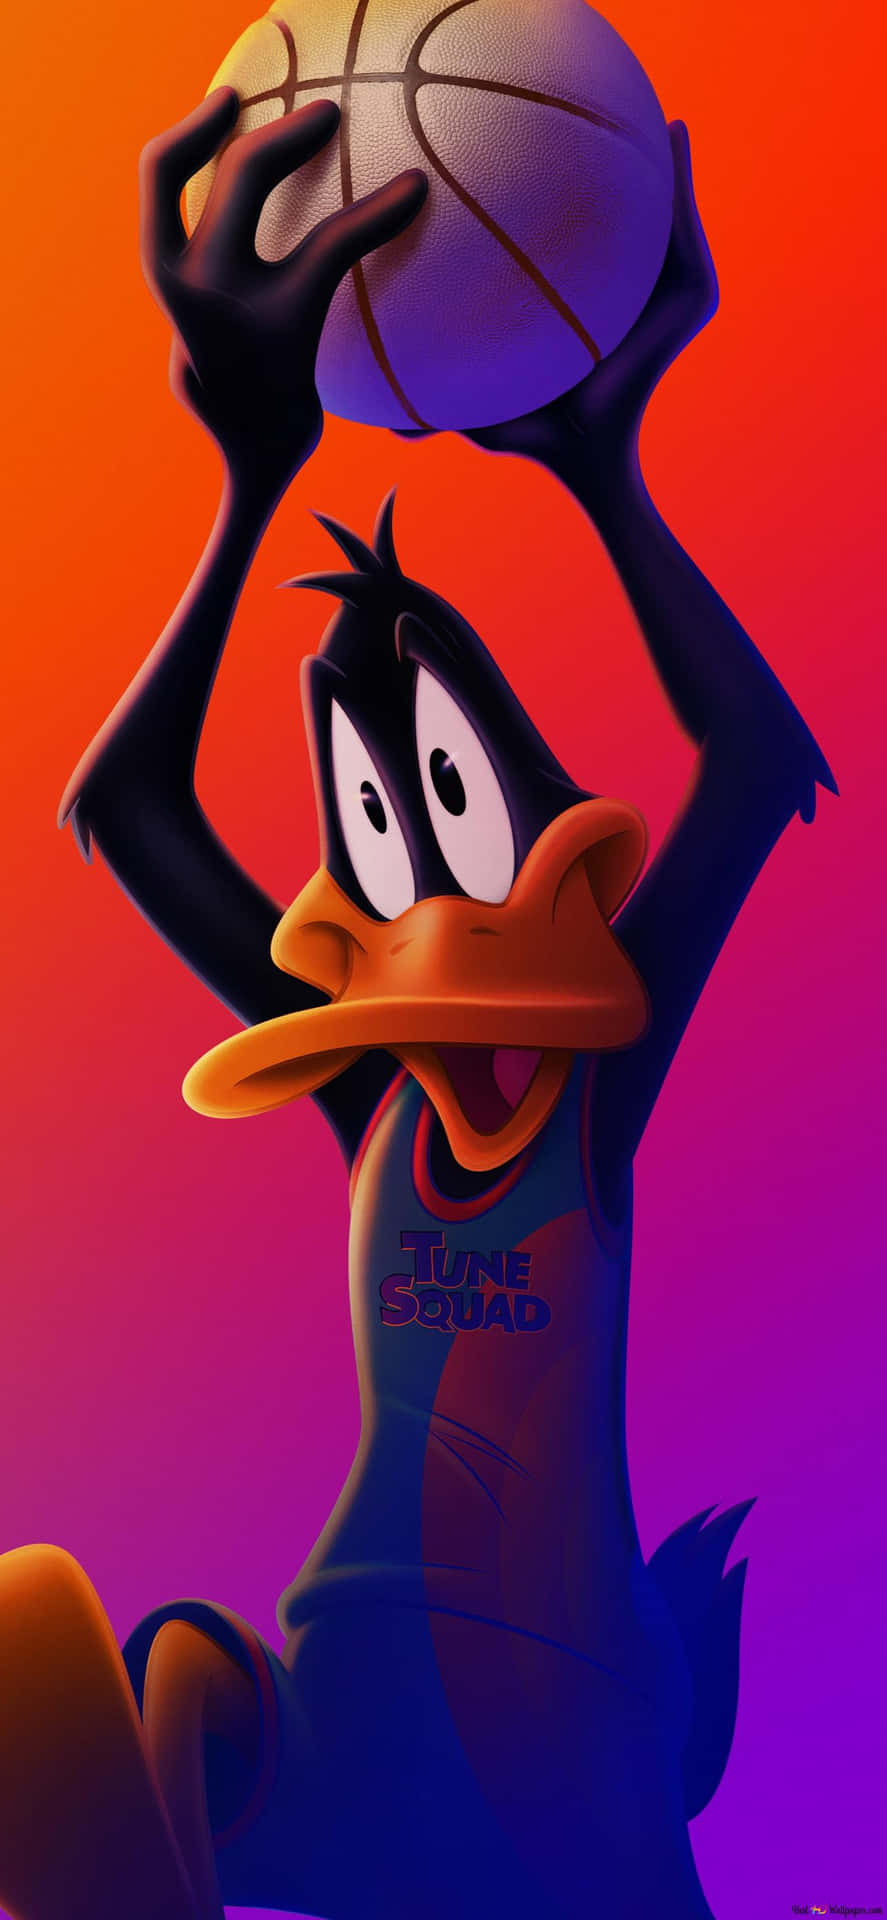 Immaginedel Personaggio Dei Cartoni Animati Daffy Duck